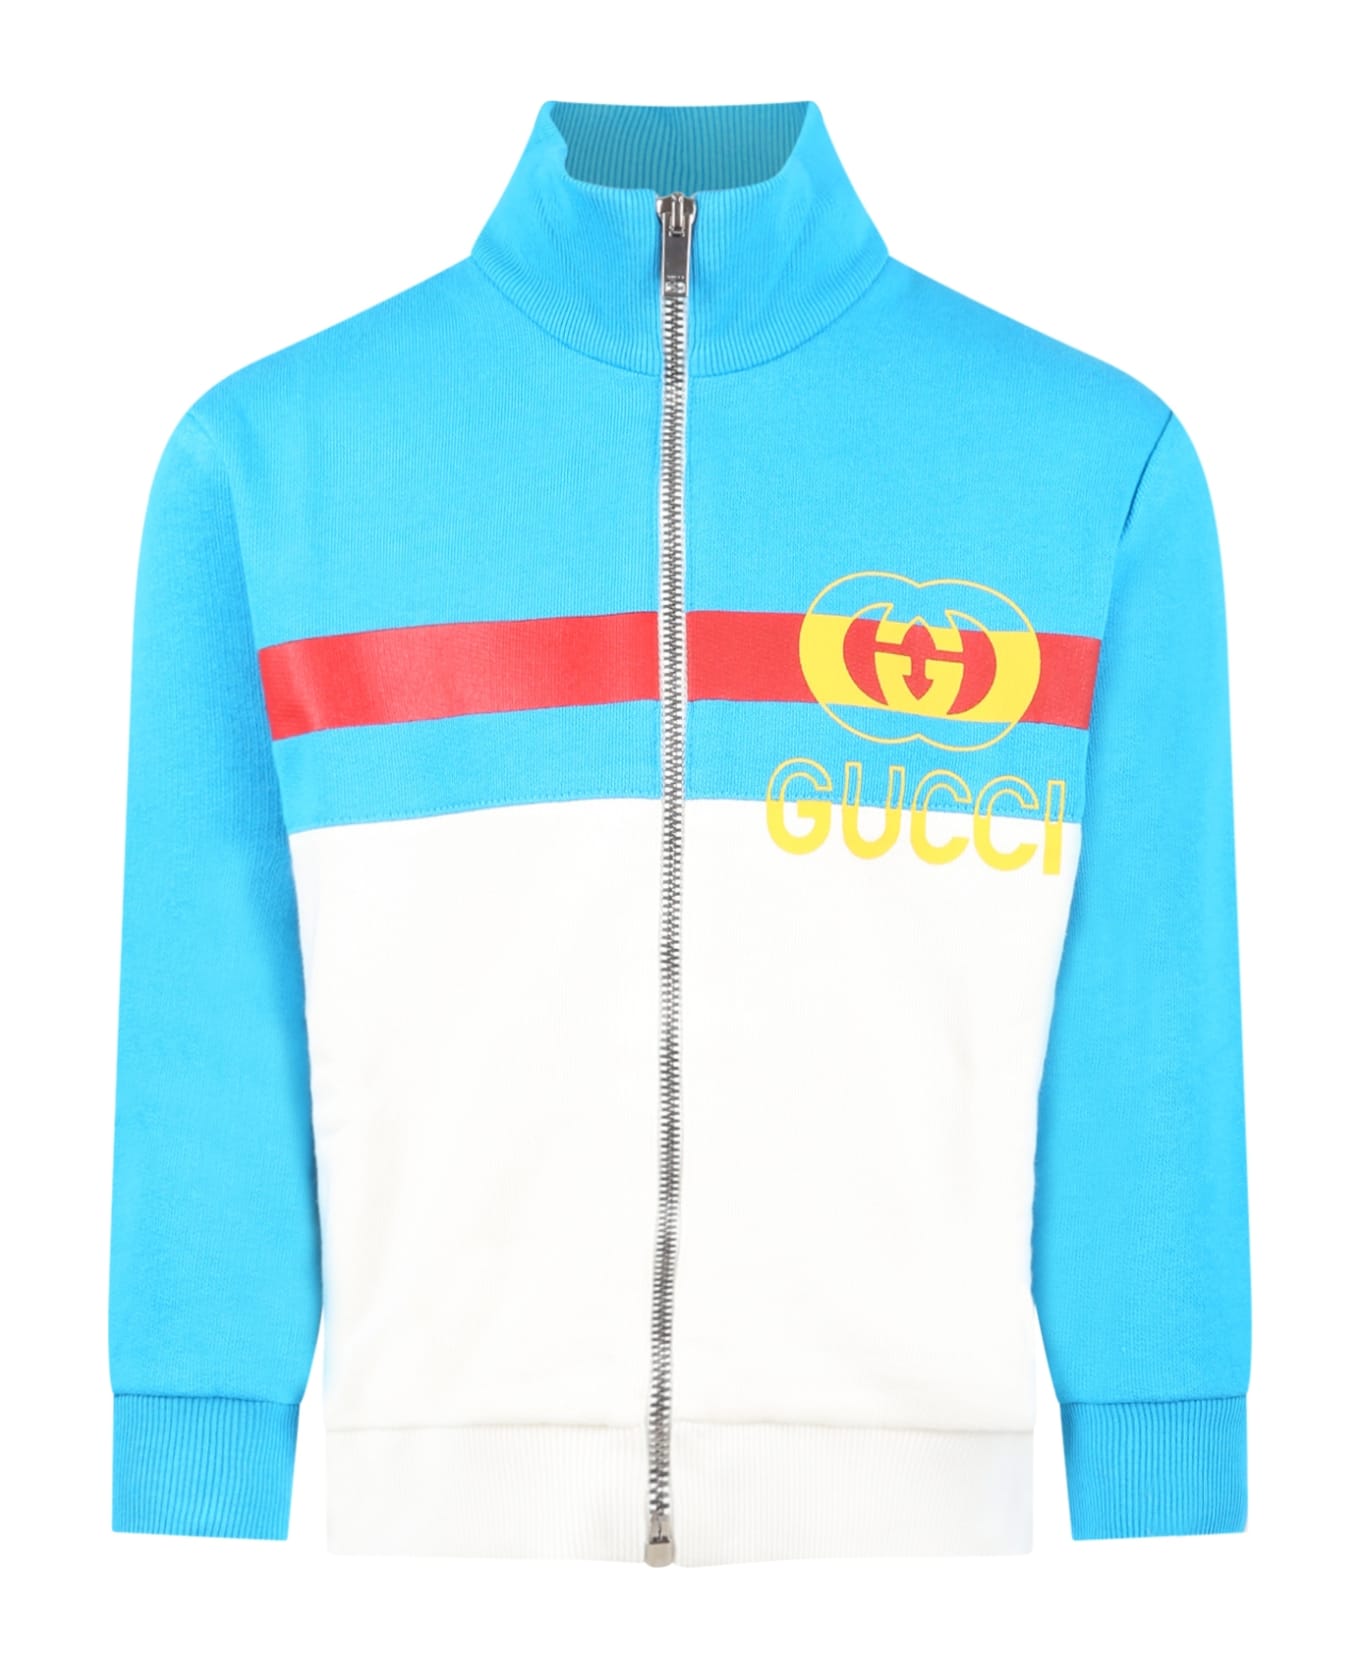 Gucci Multicolor Sweatshirt For Boy With Logo - Multicolor